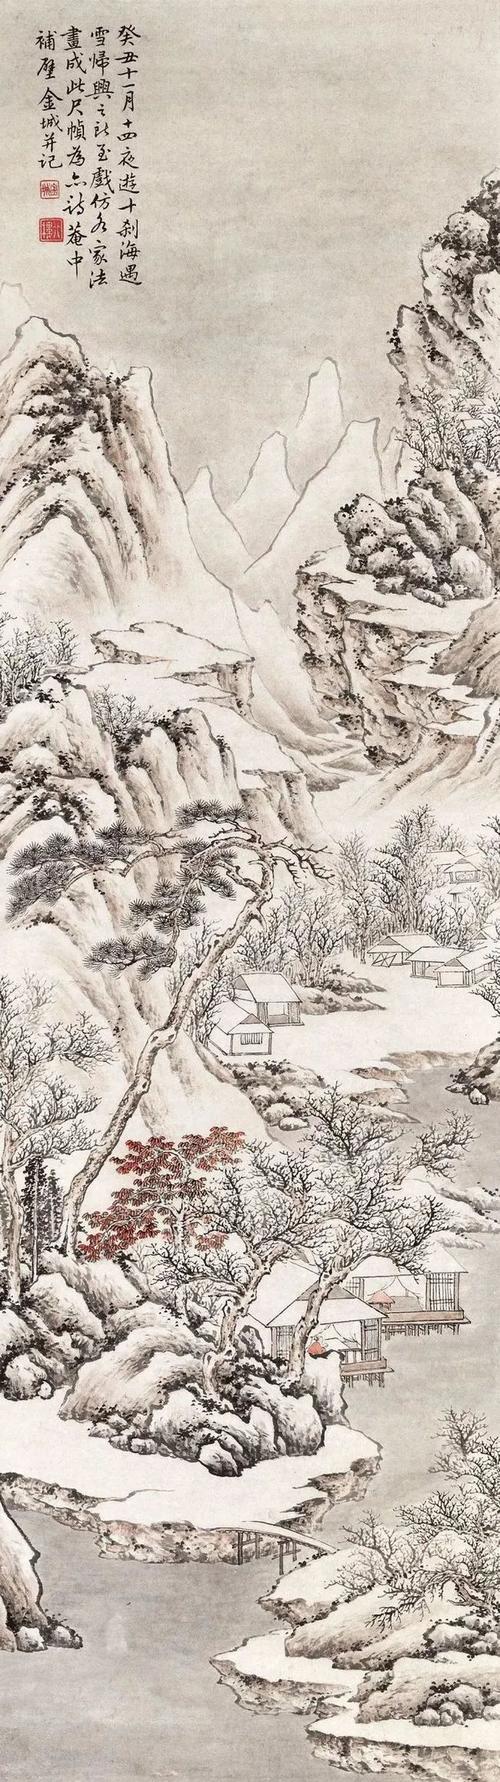 古意山水画,养心静气!|中国画|赵孟頫|绘画|篆刻|画家_网易订阅